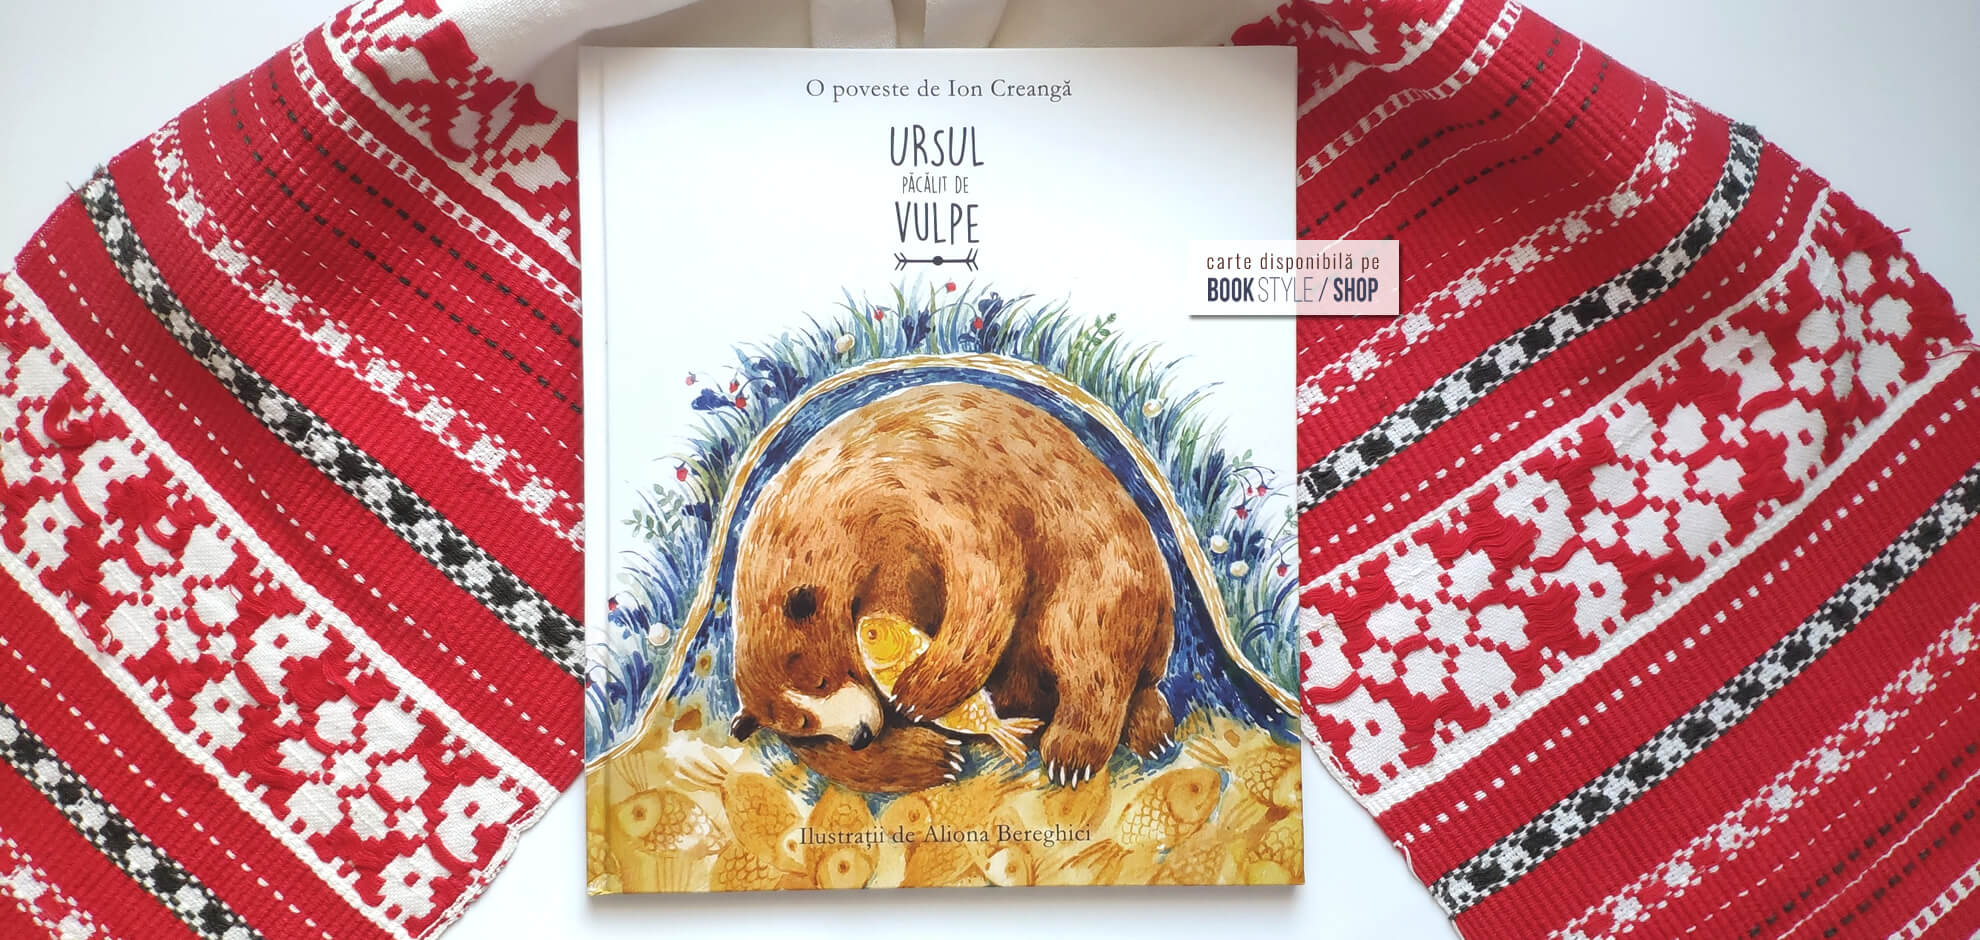 Ursul păcălit de vulpe, de Ion Creangă și ilustrații de Aliona Bereghici